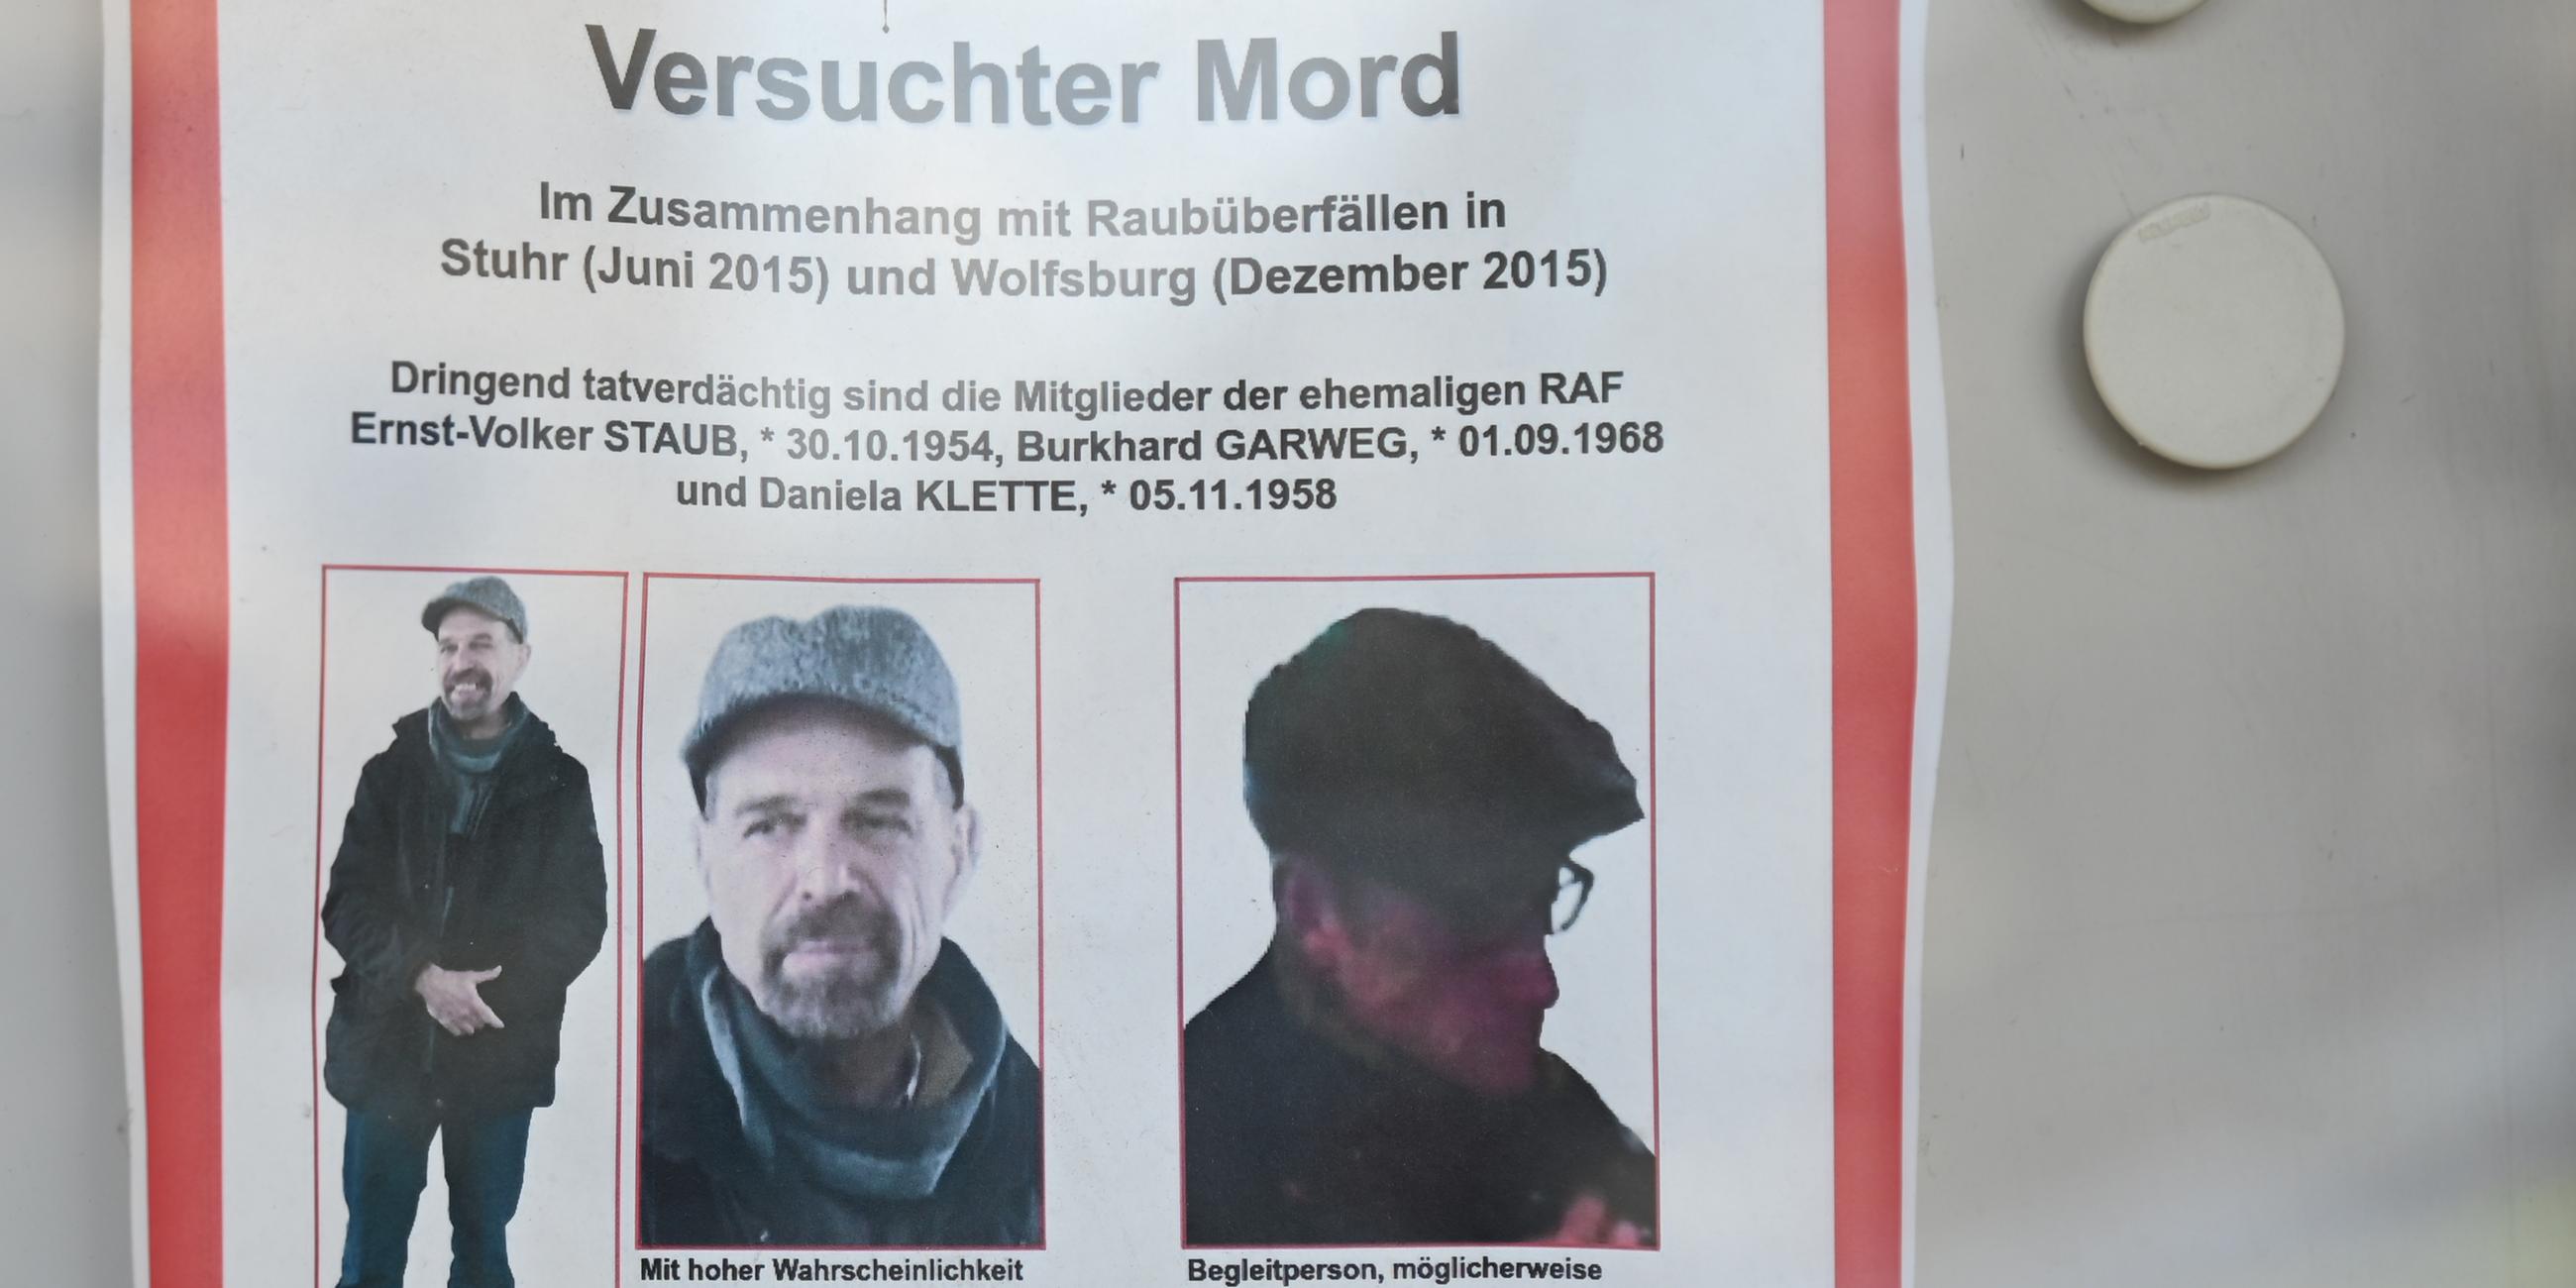 Nordrhein-Westfalen, Düsseldorf: Drei mutmaßliche ehemalige RAF-Terroristen sind trotz Auflösung der Terrorgruppe 1998 noch immer bundesweit auf Fahndungsplakaten zu sehen.